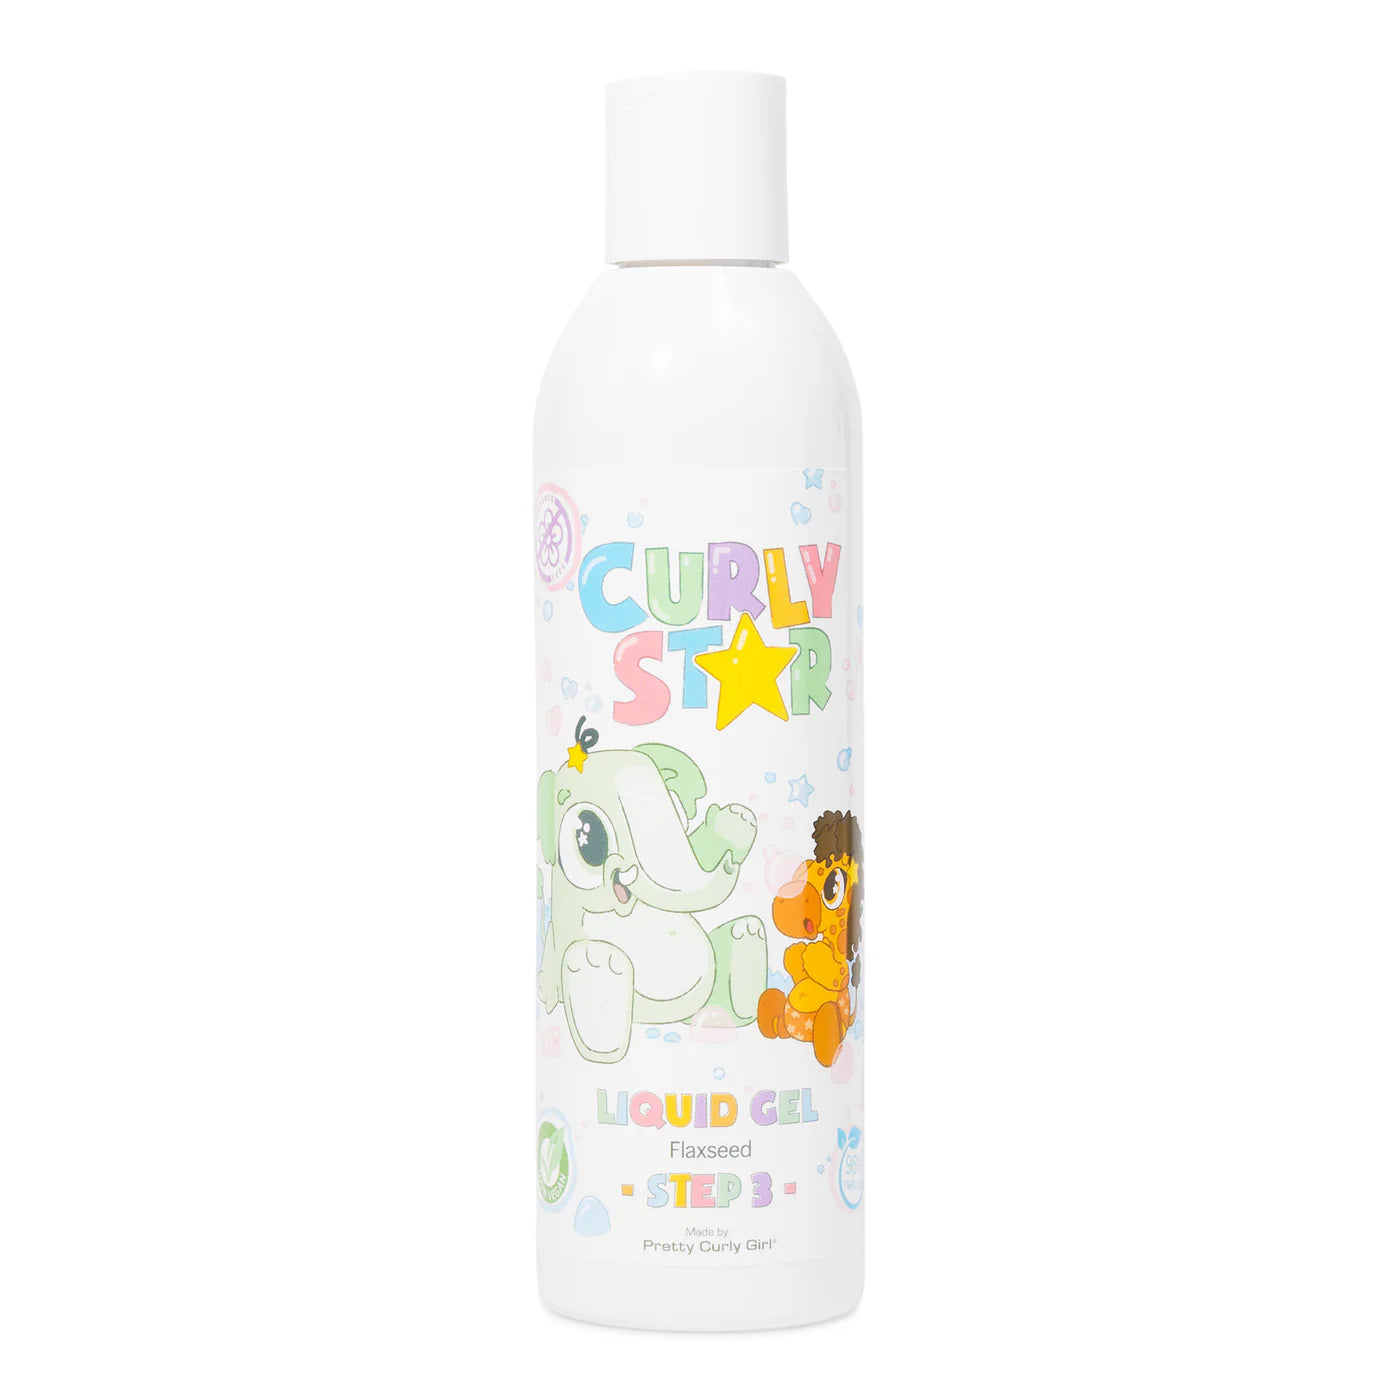 Curly Star - Liquid Gel 200ml Fragrance Free / No Parfum